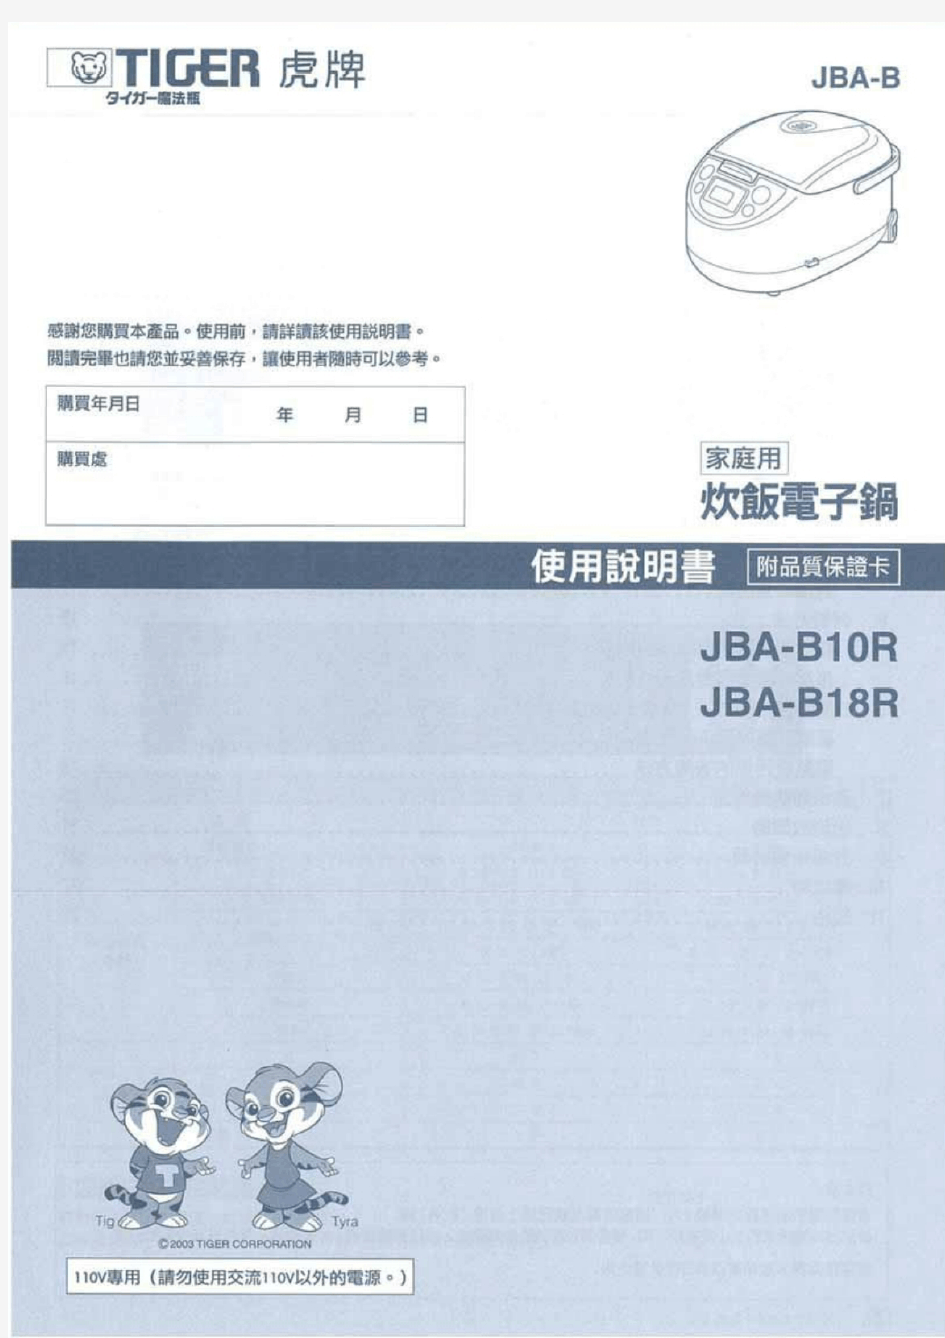 虎牌JBA-B电饭煲中文说明书